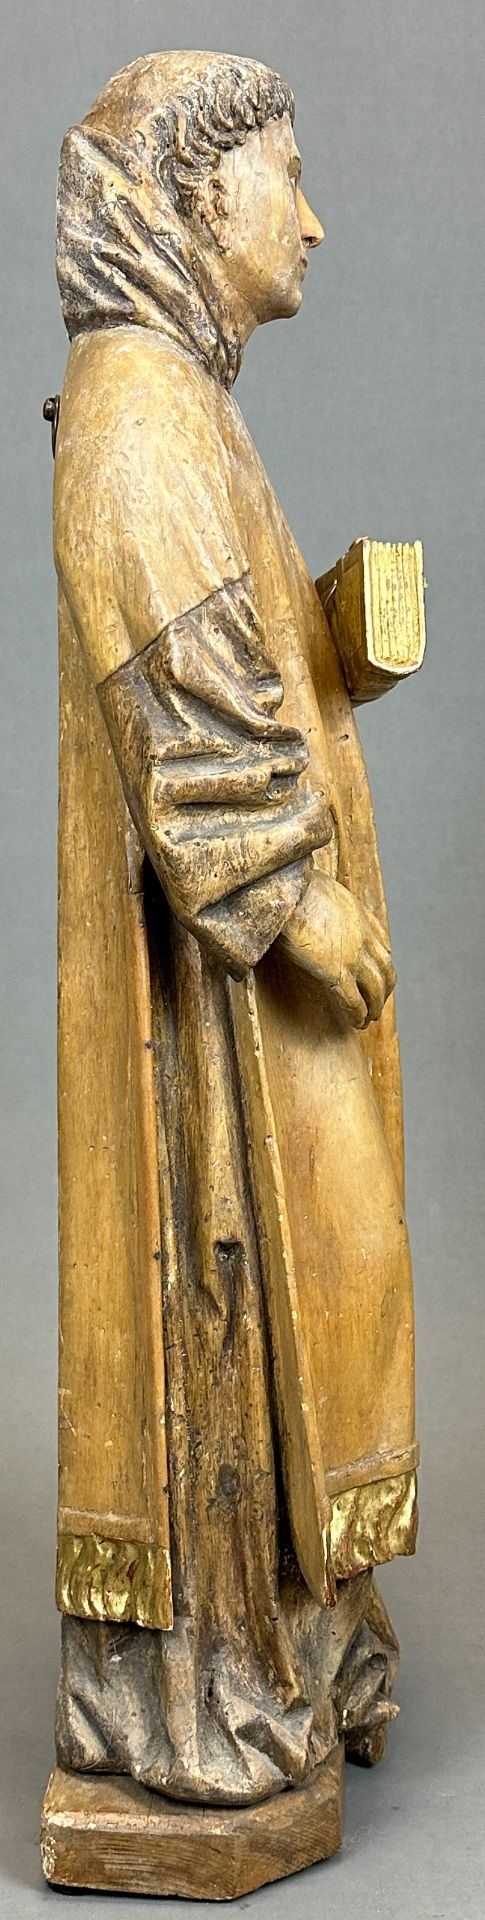 Holzfigur. Mönch mit Buch. Letztes Drittel 17. Jahrhundert. Süddeutschland. - Bild 4 aus 9